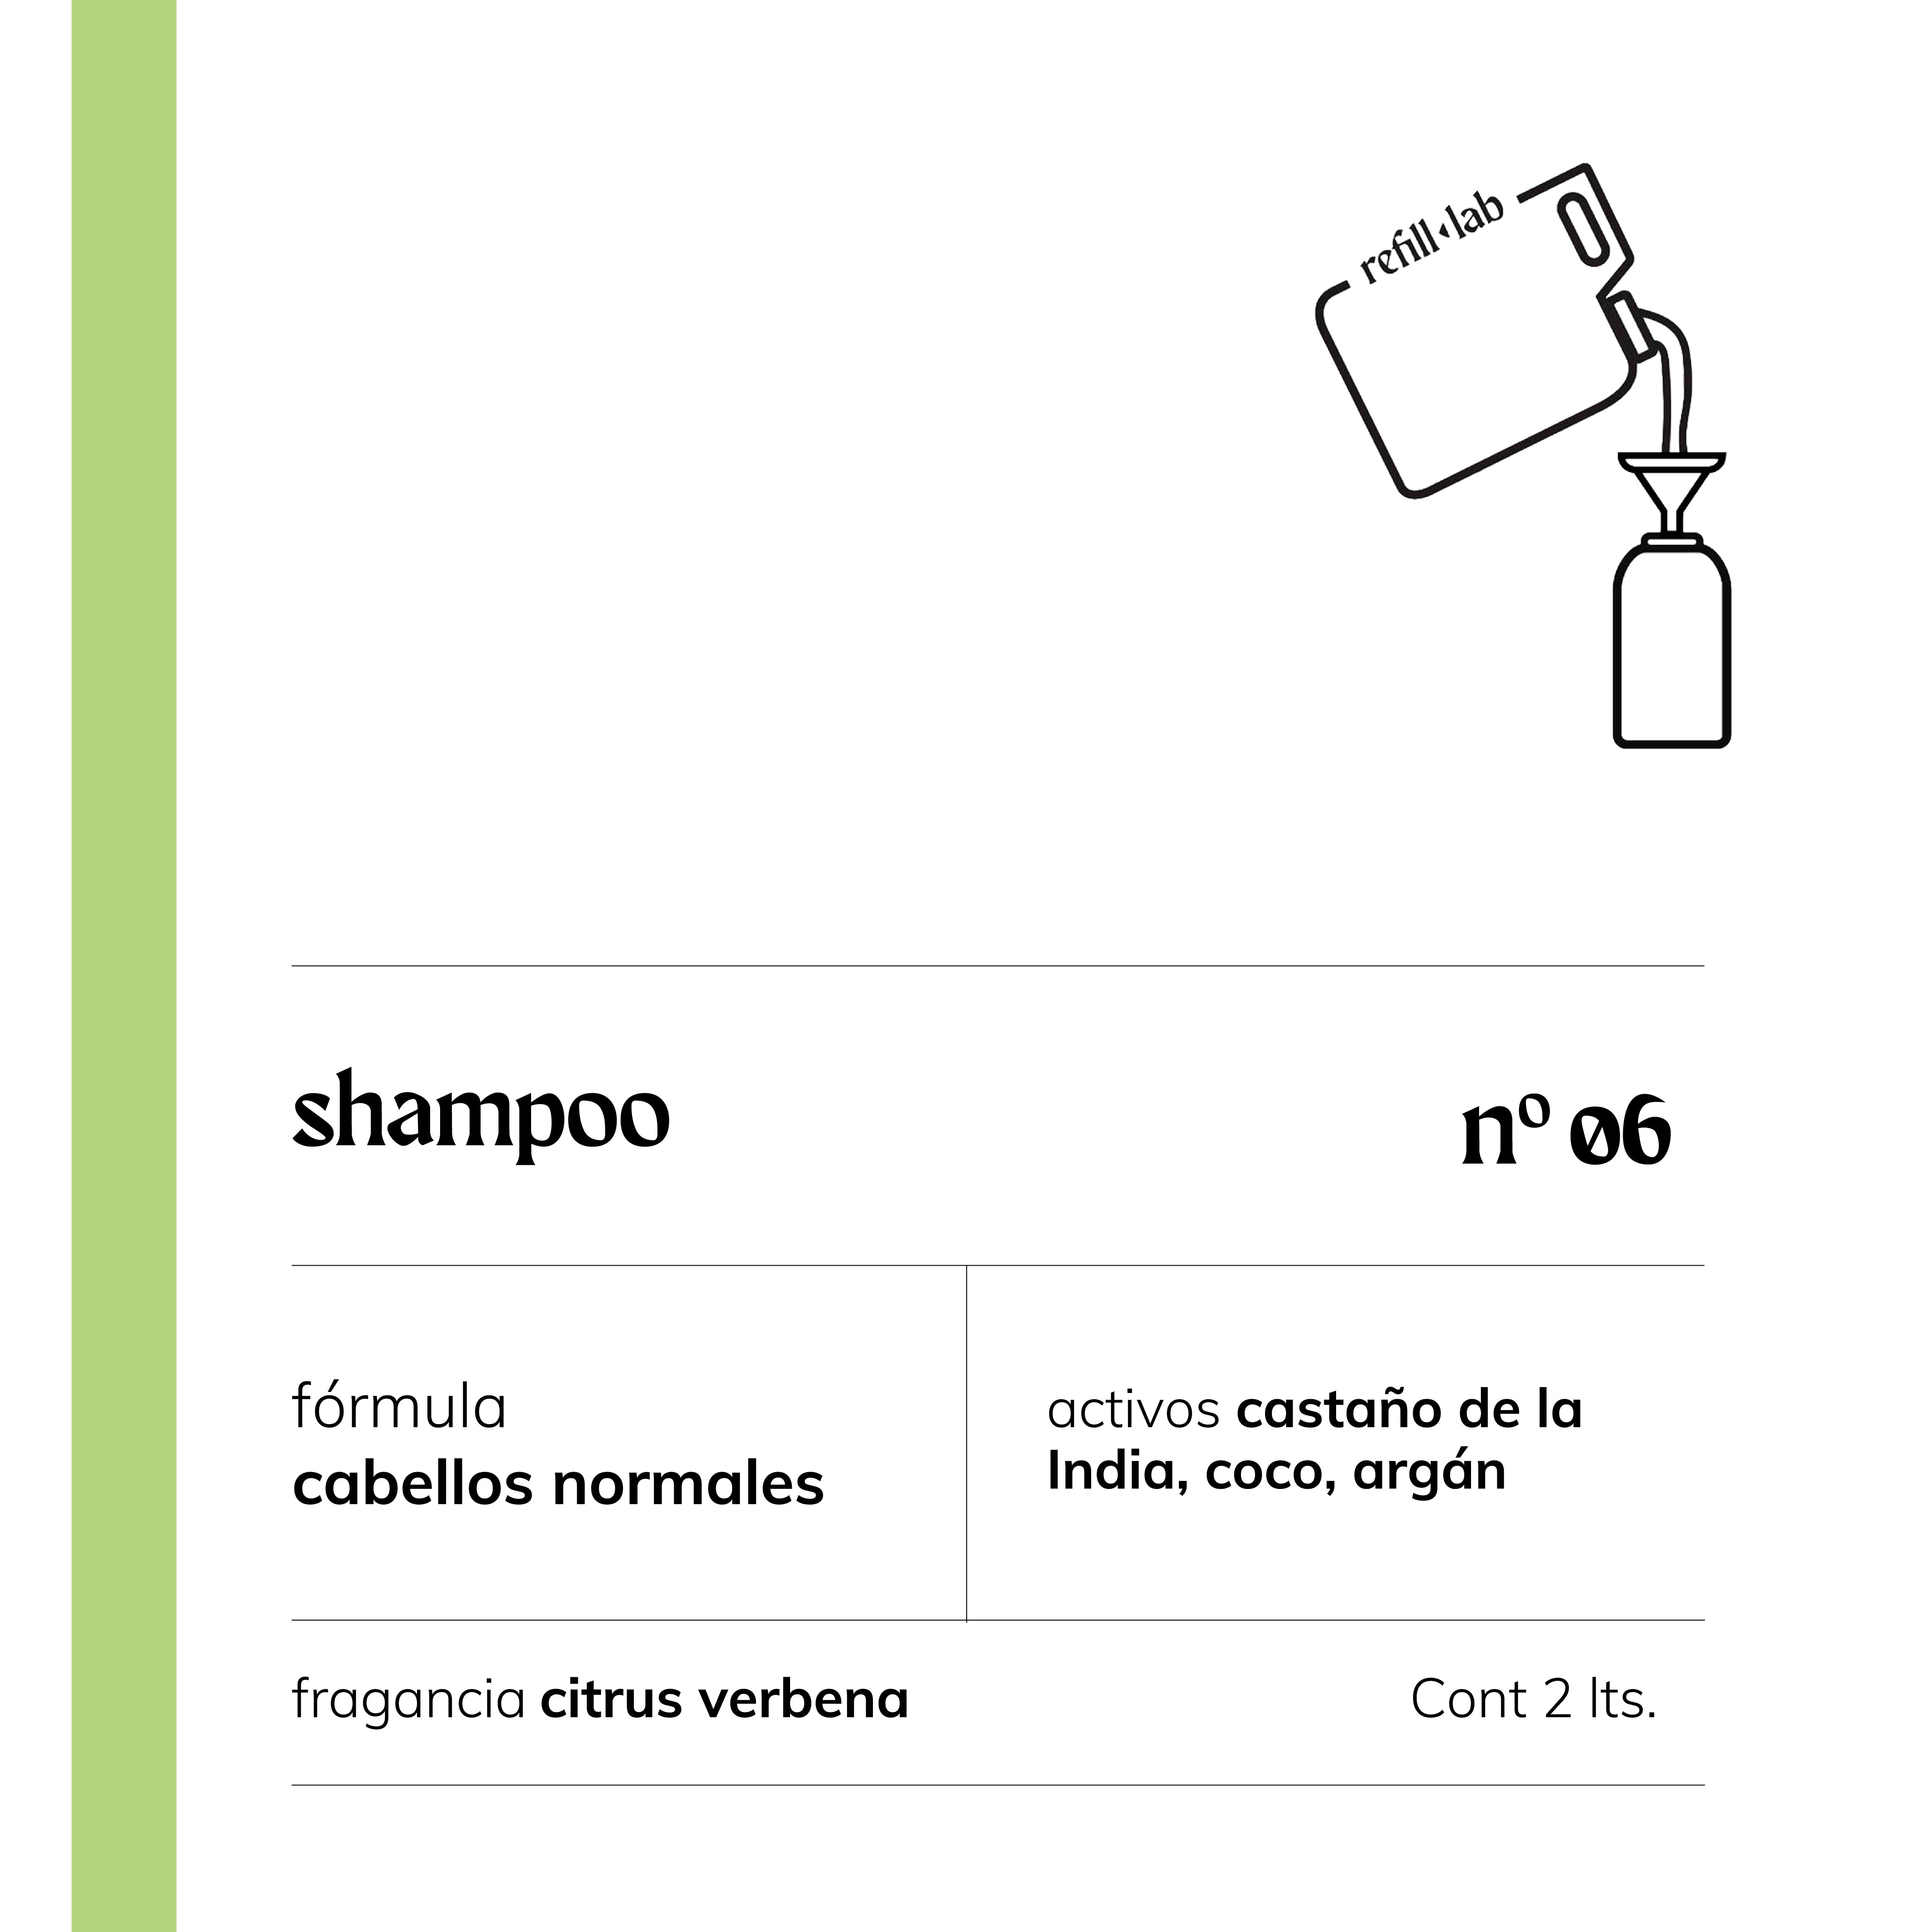 Shampoo sin sulfatos - Cabellos Normales - Citrus Verbena - 2 lts.